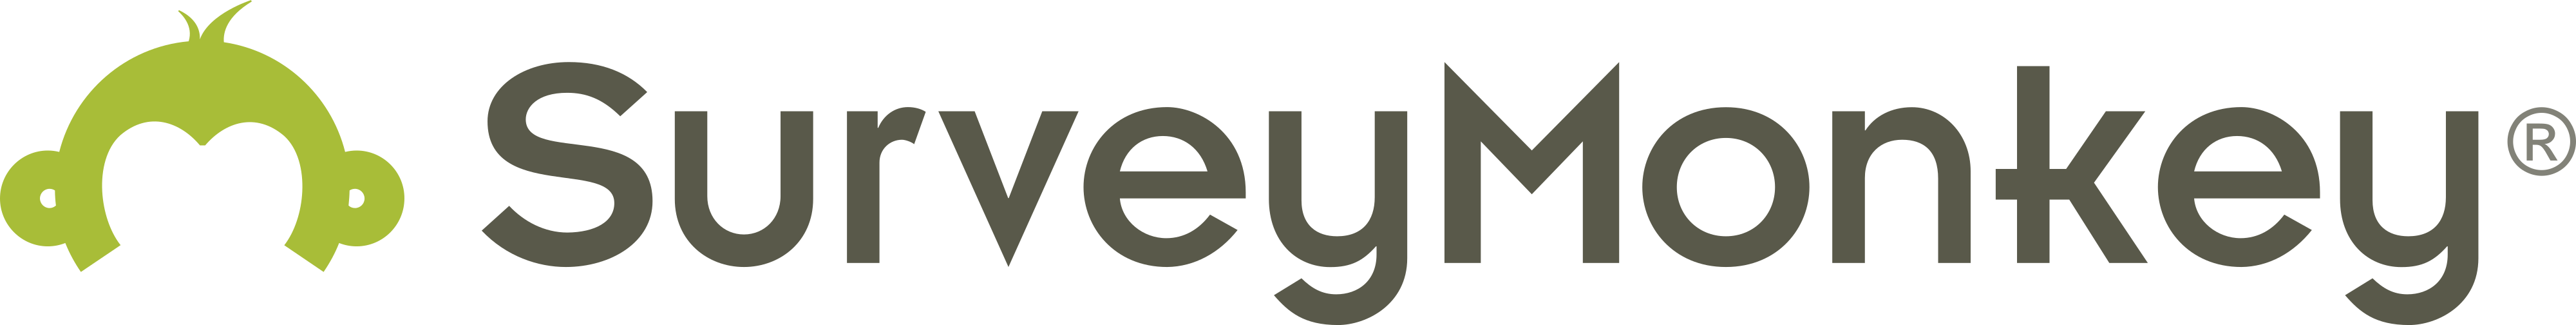 SurveyMonkey logo - download.